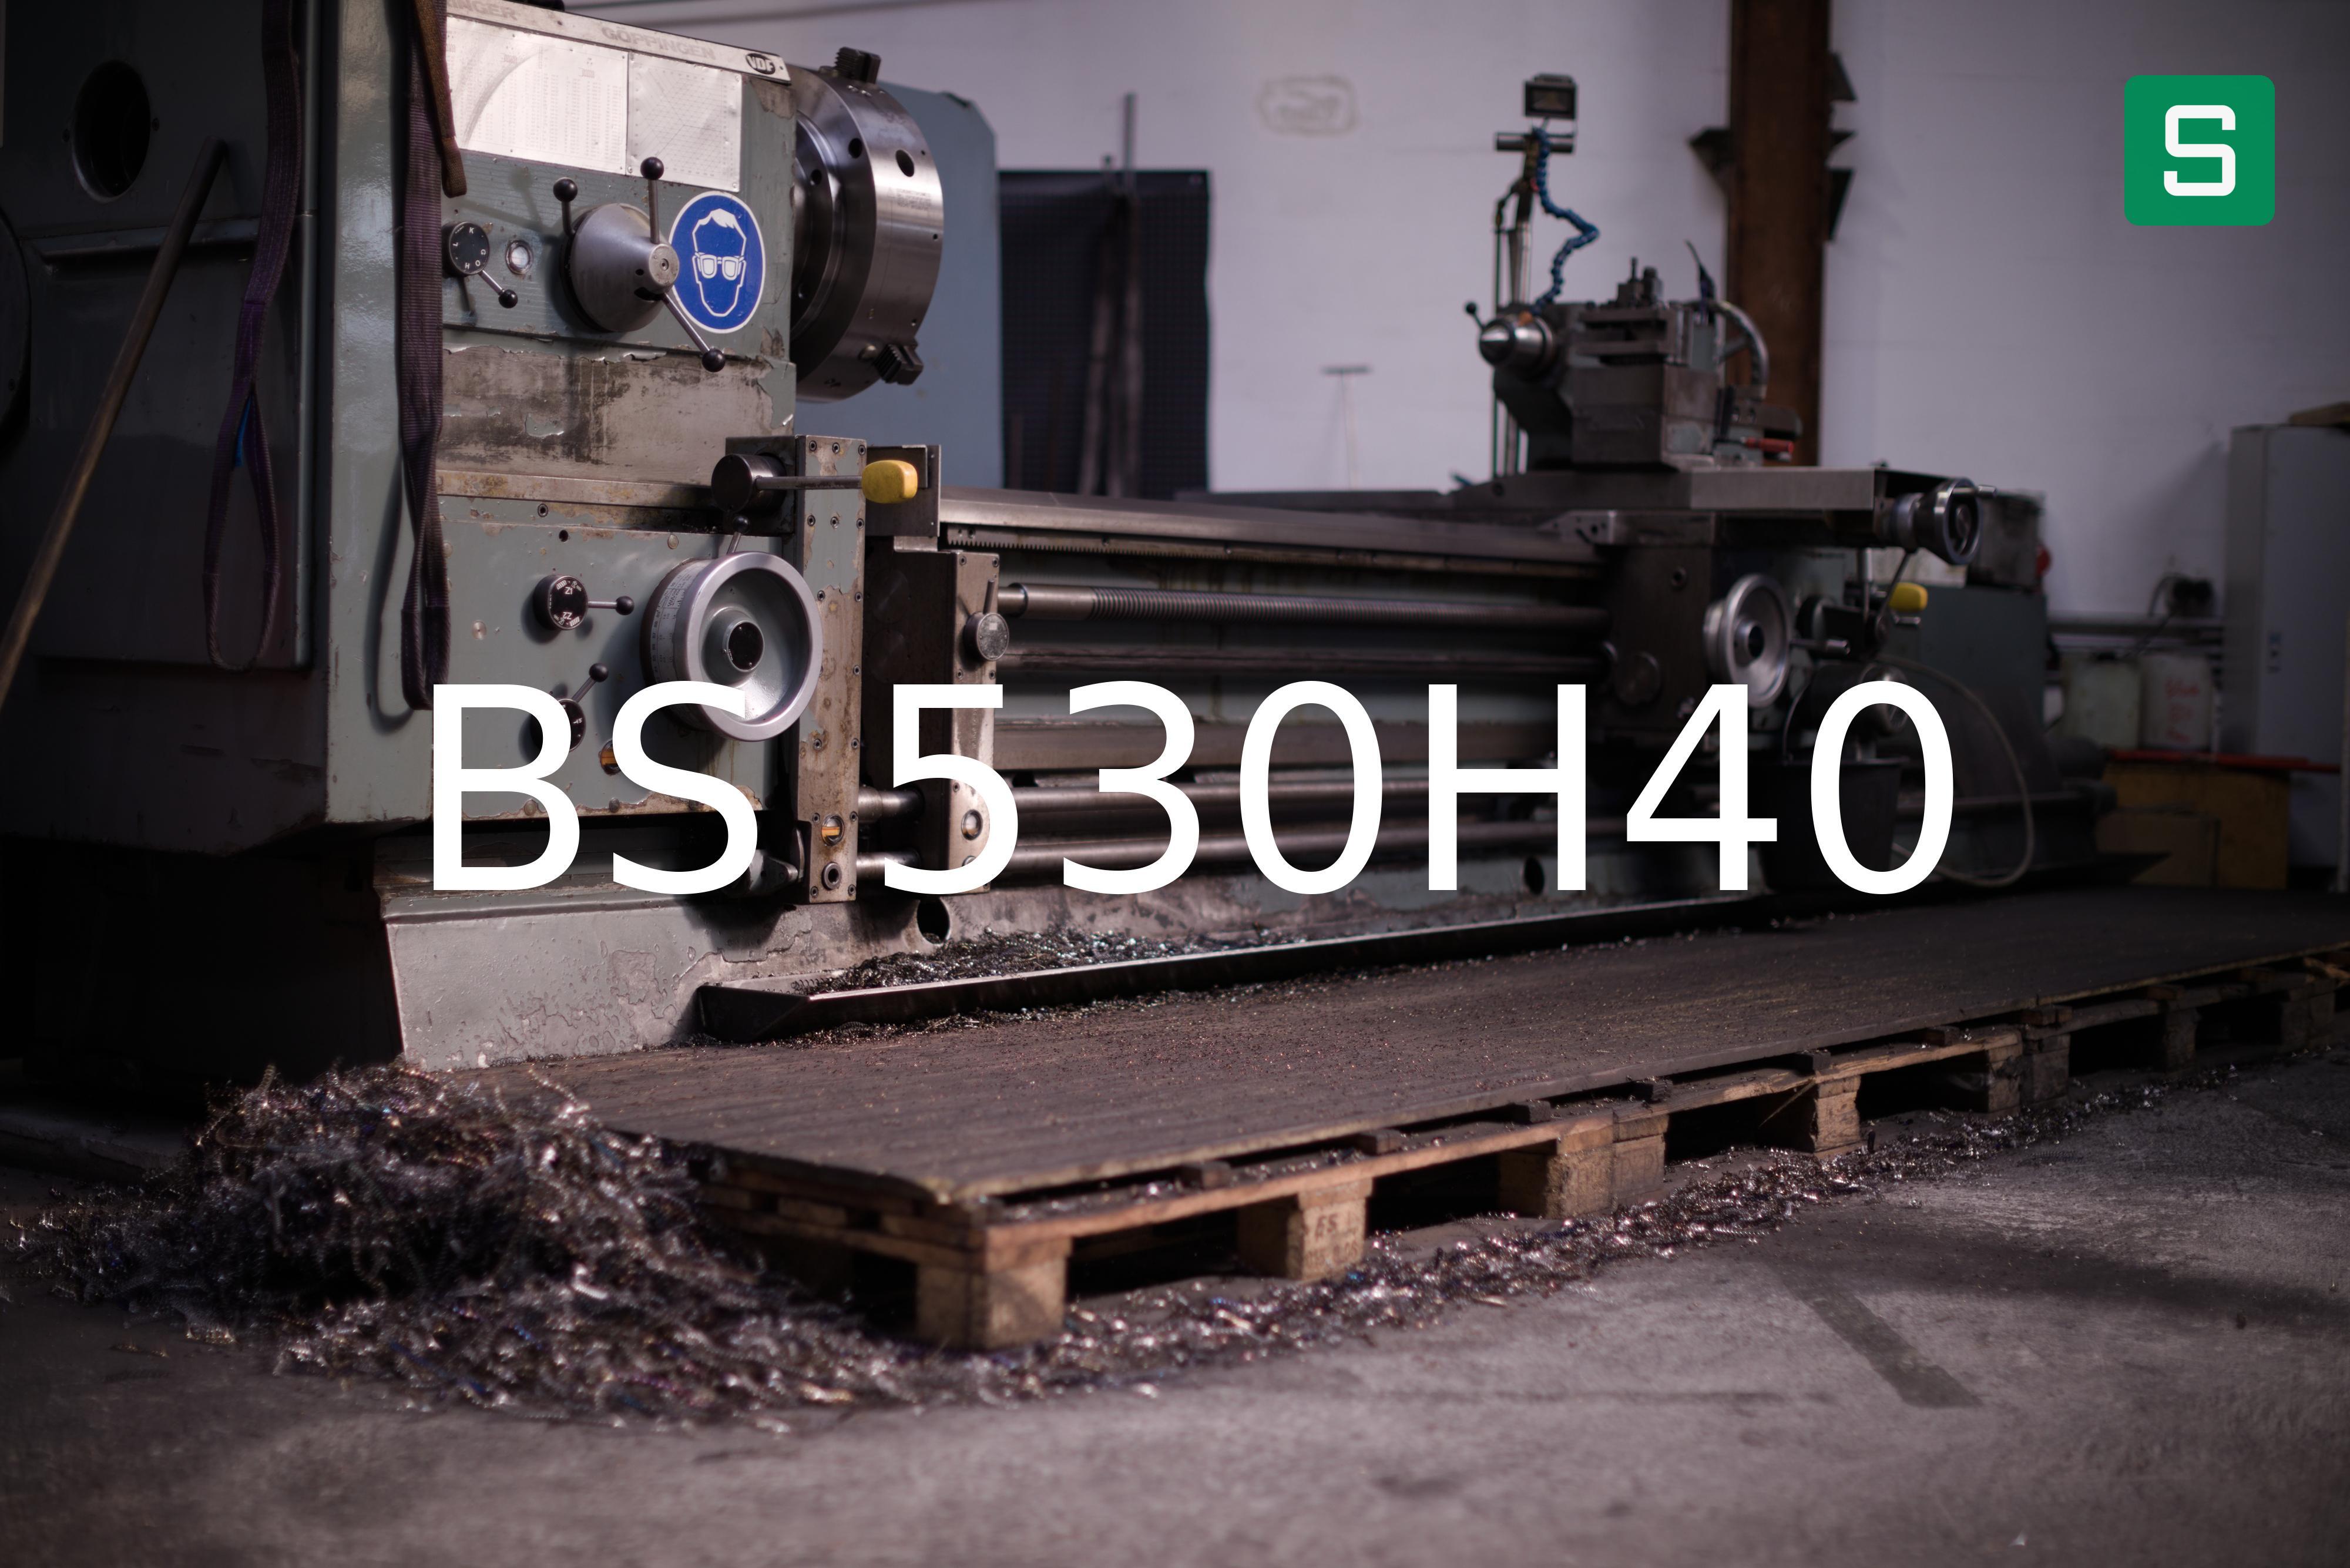 Steel Material: BS 530H40